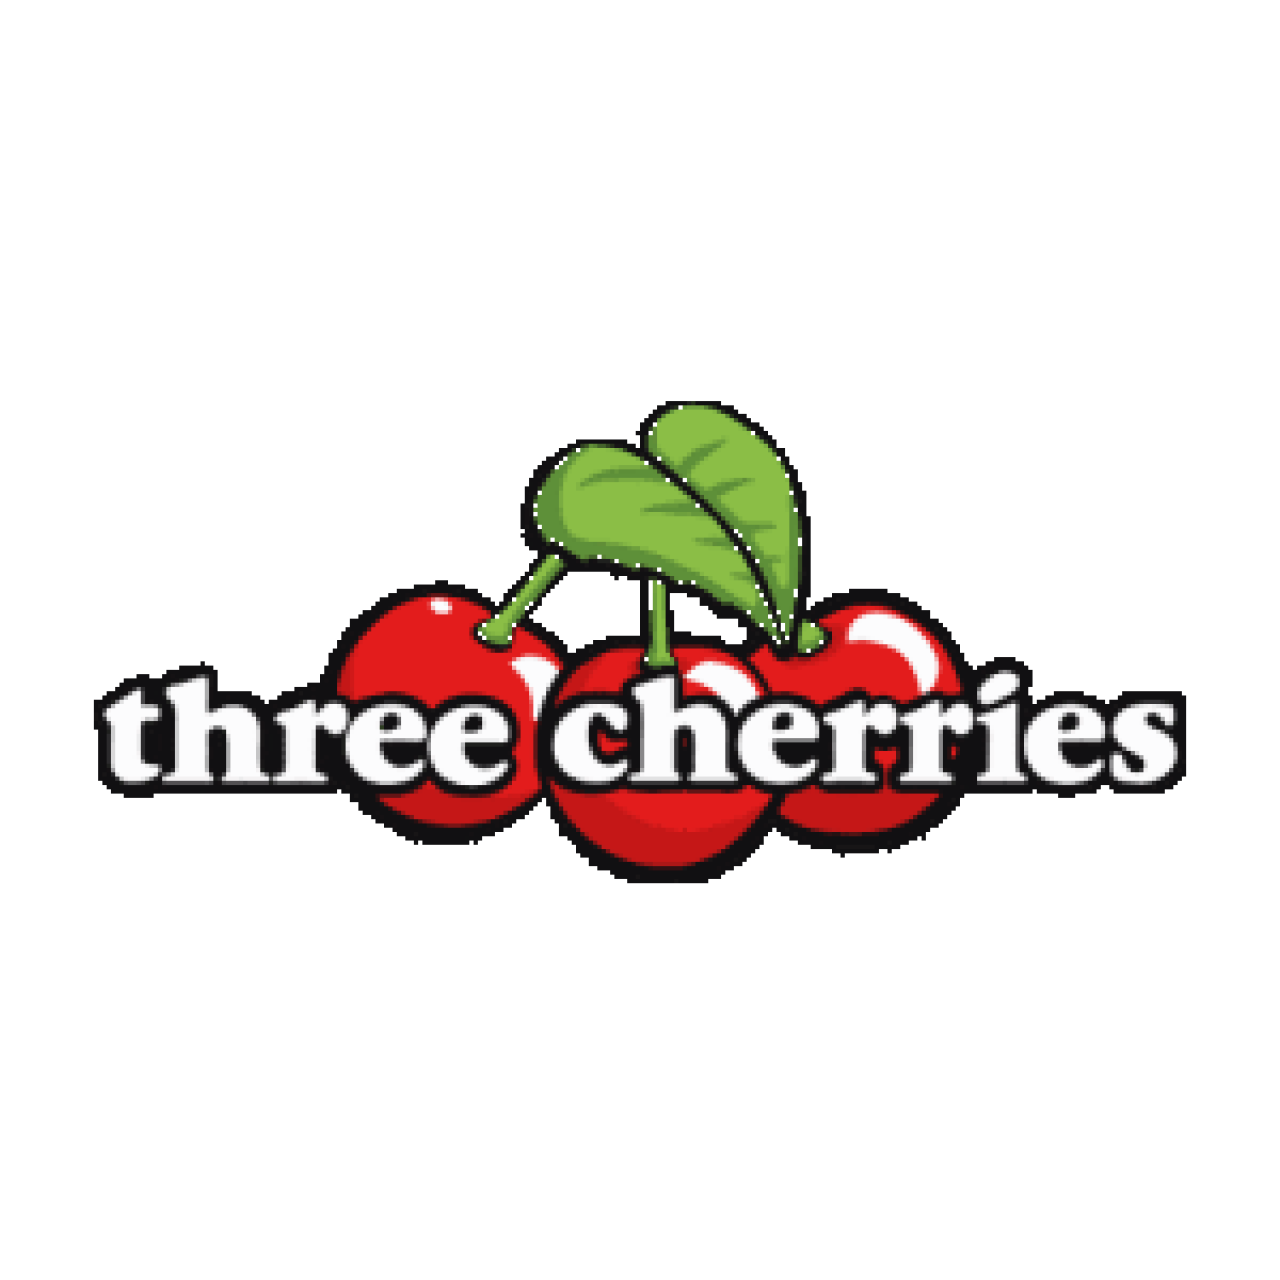 Three Cherries logo.